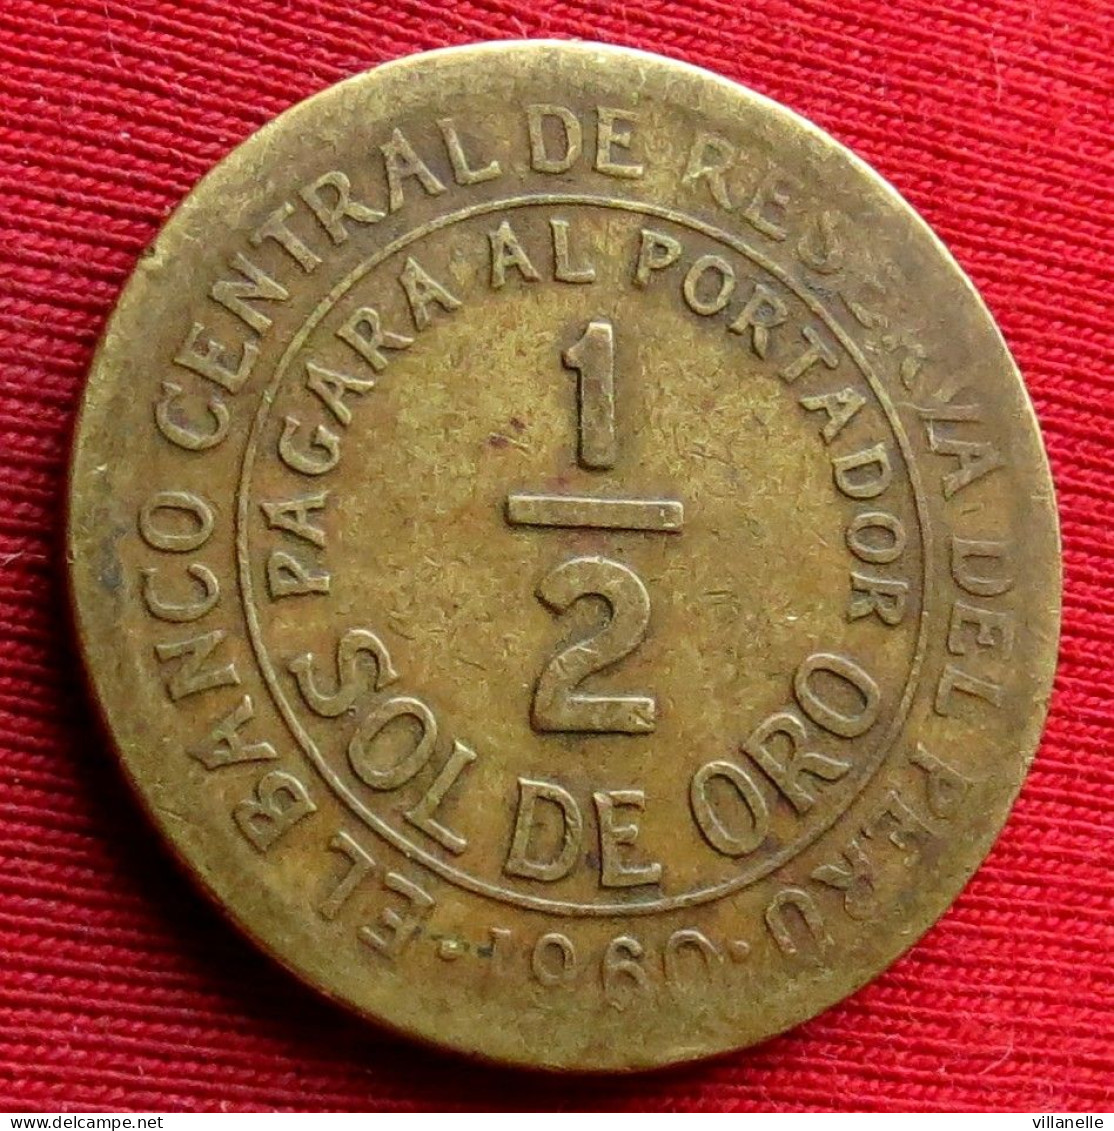 Peru 1/2 Half Sol De Oro 1960 Perou  W ºº - Peru